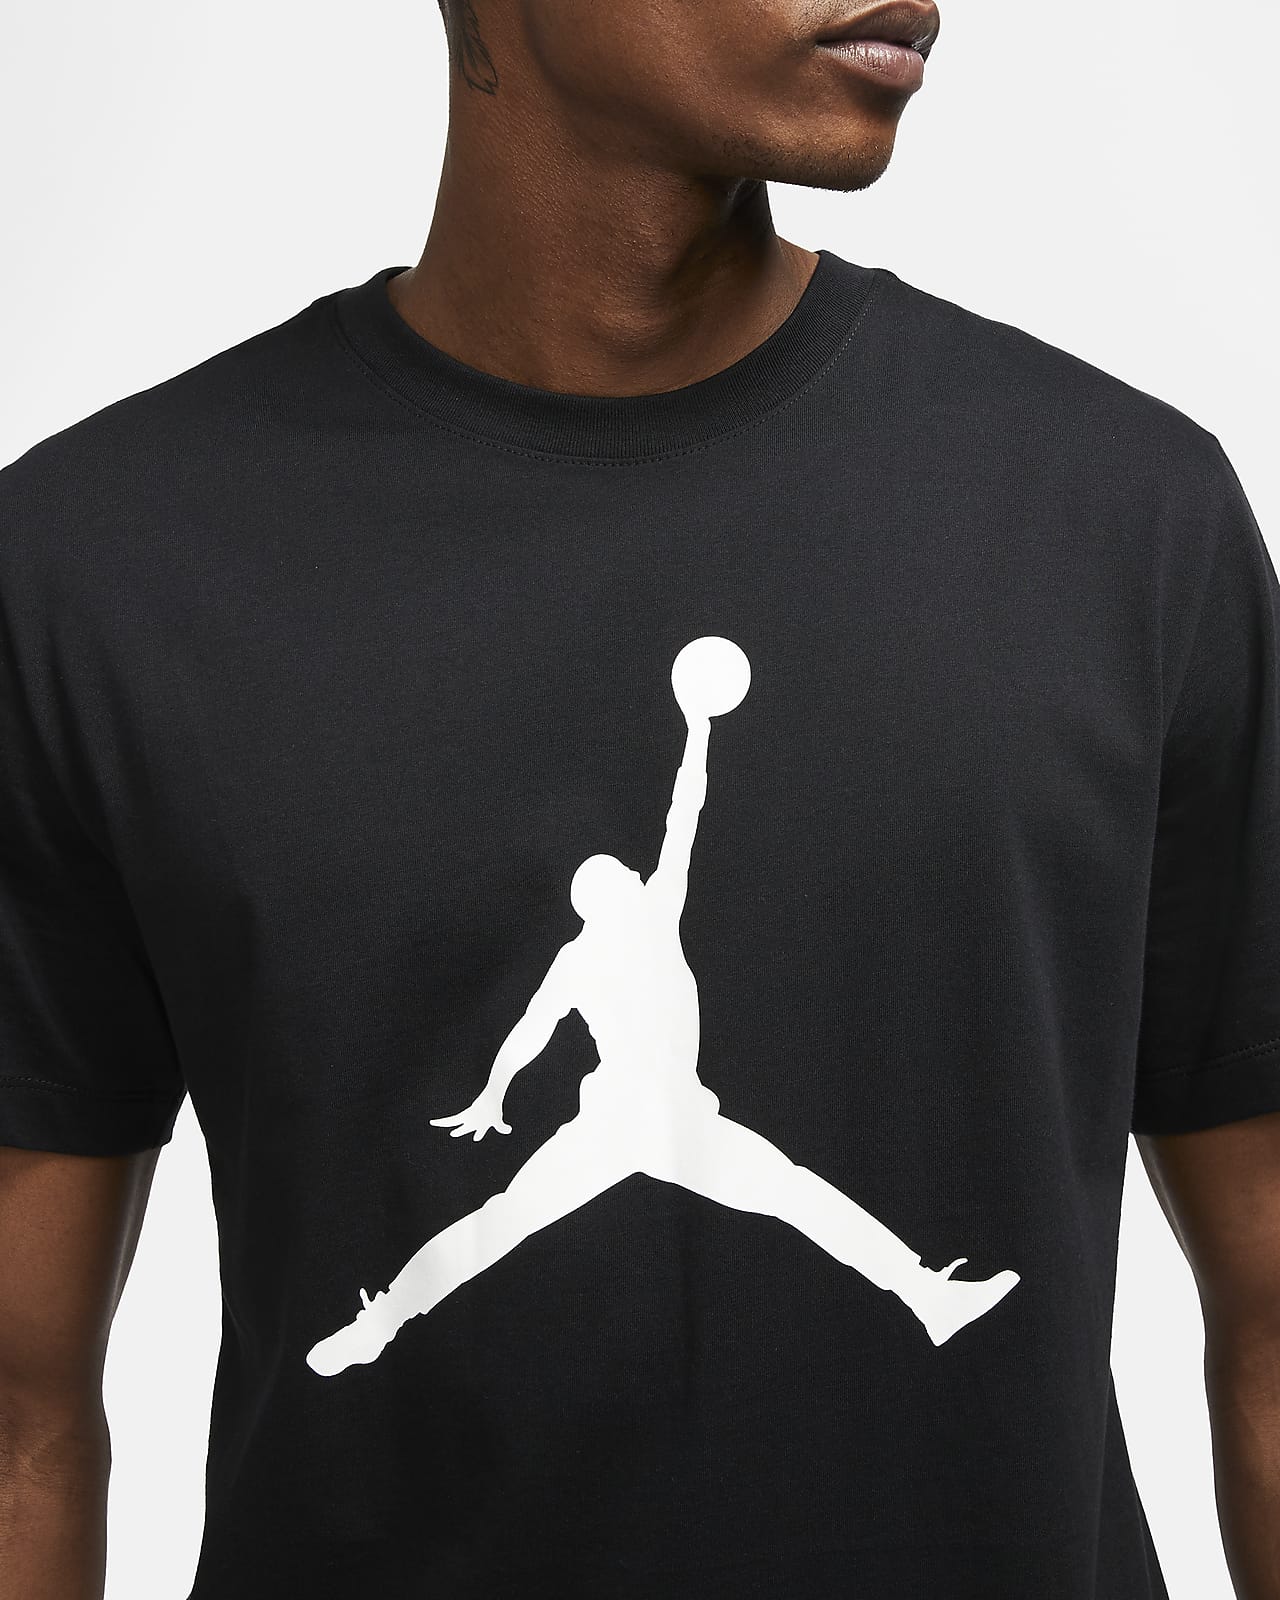 jumpman t shirts sale